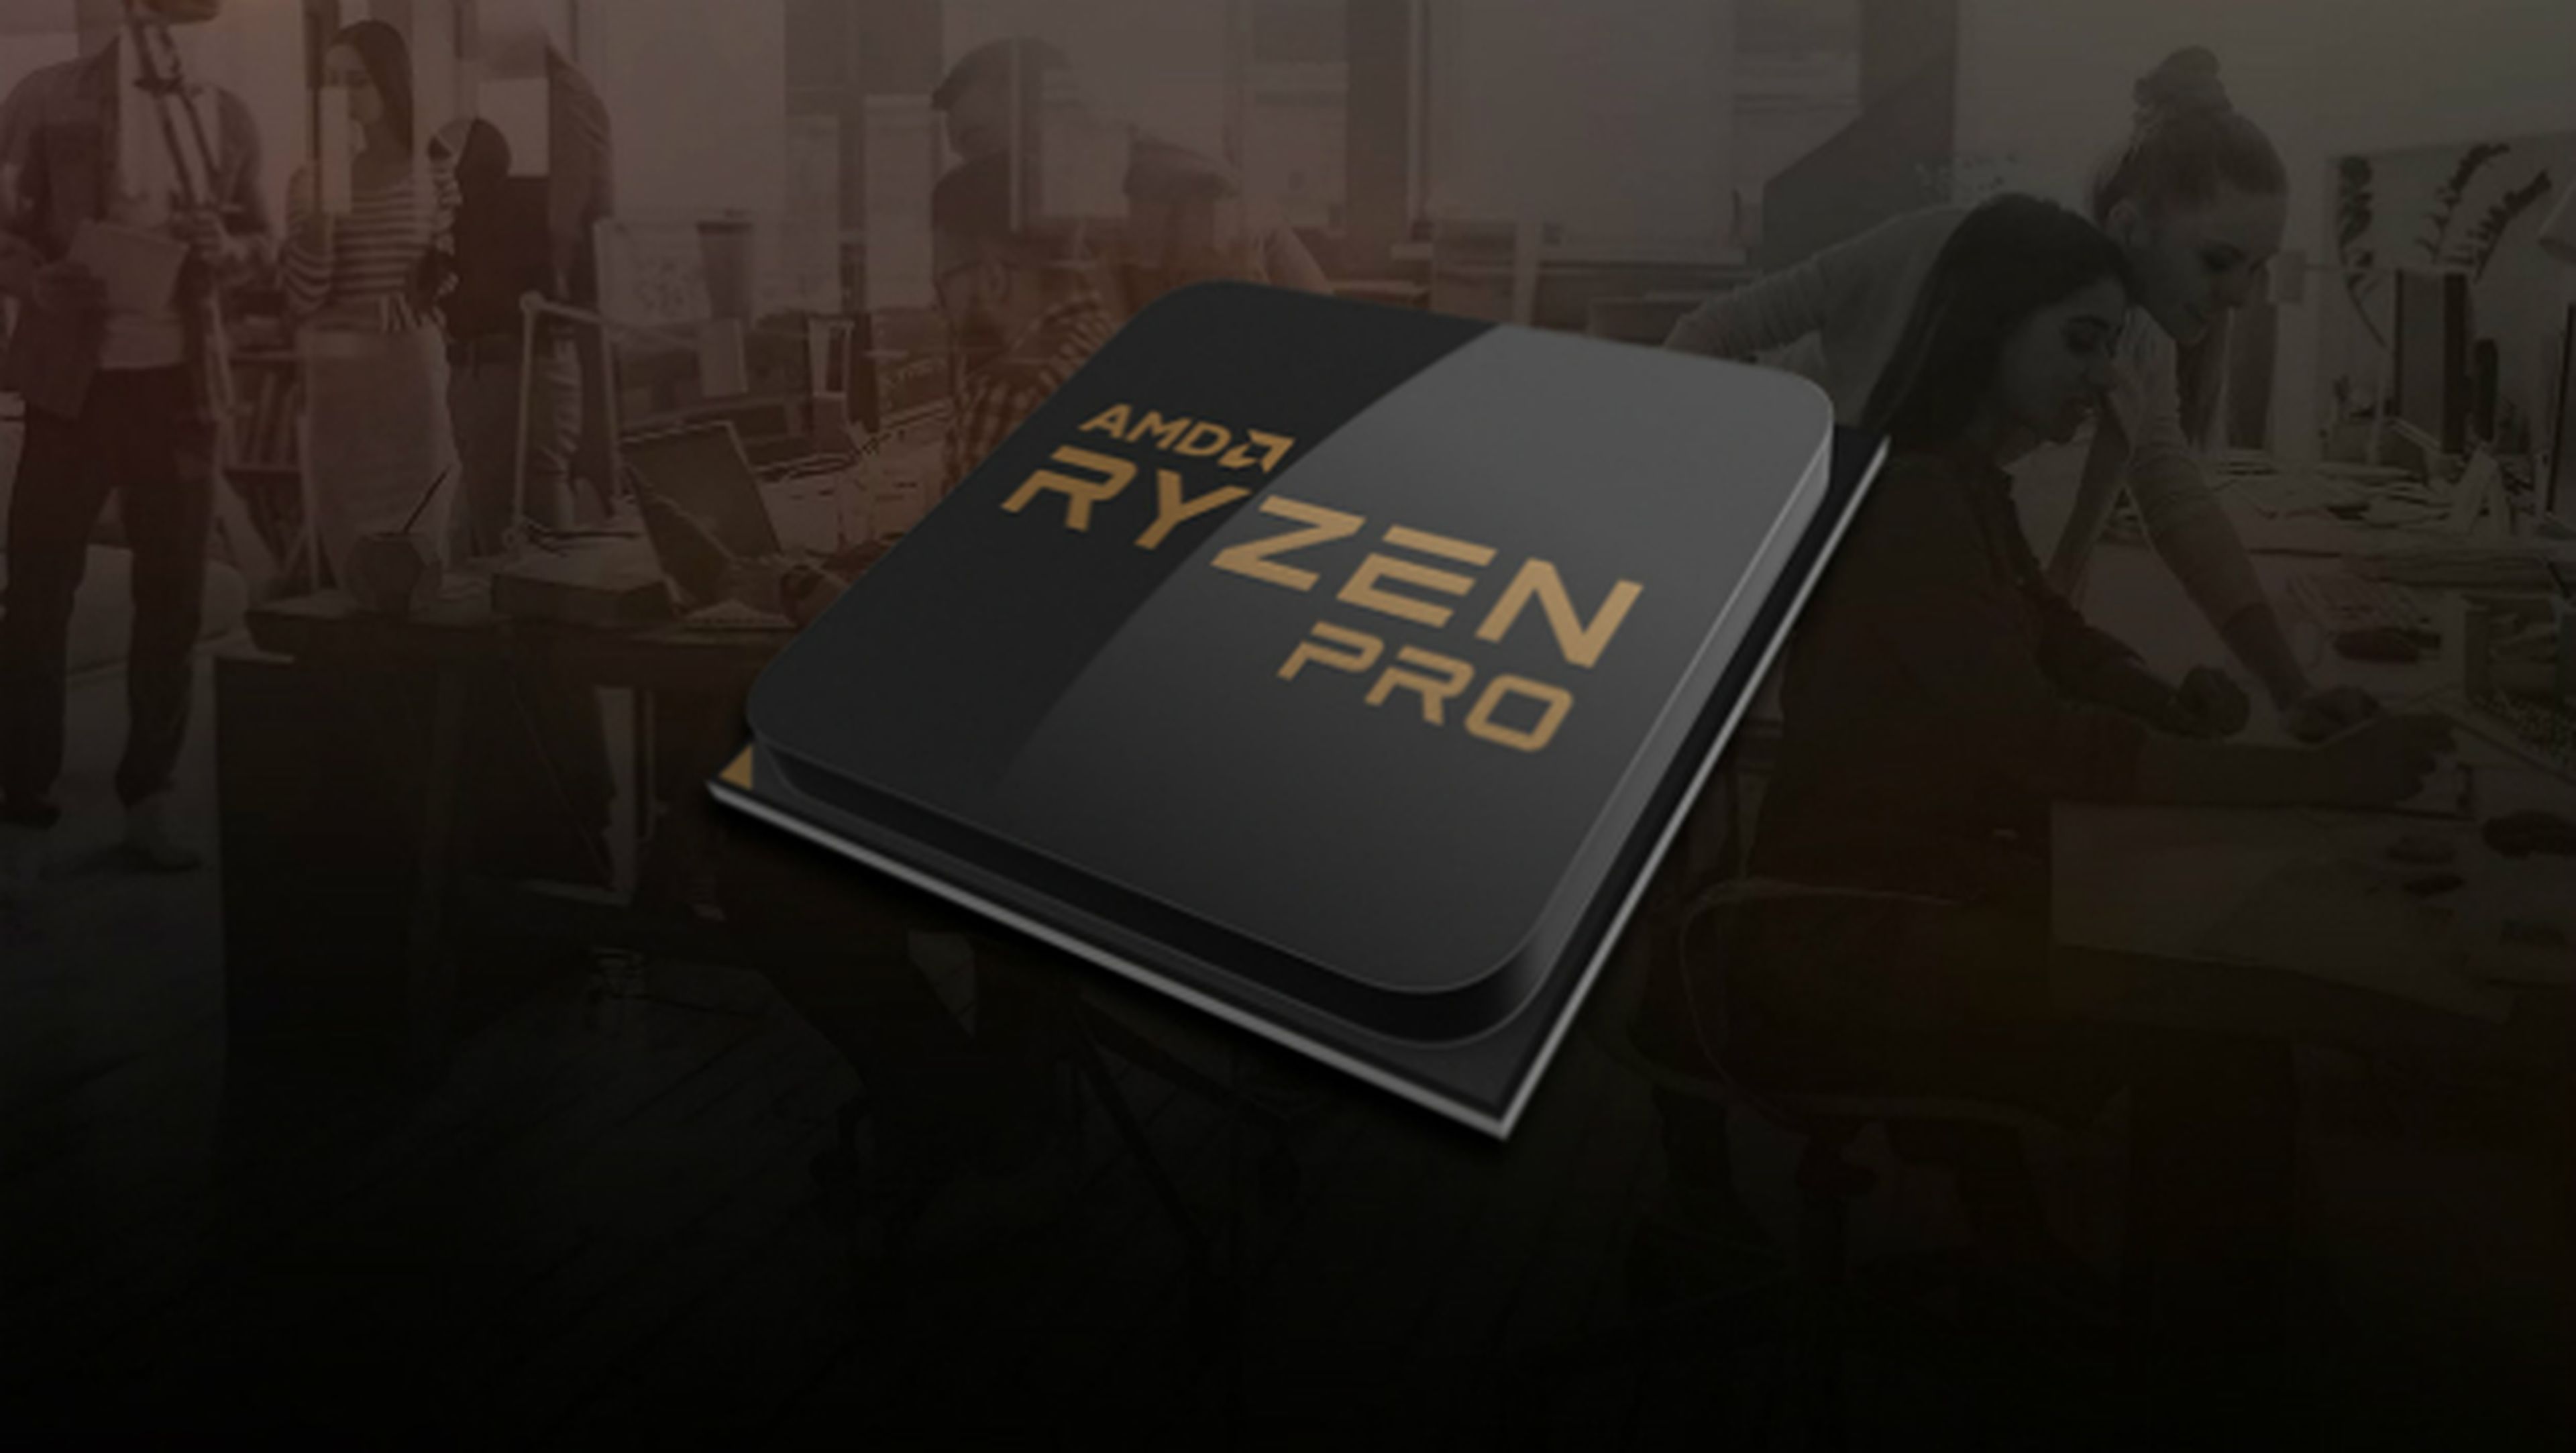 AMD Ryzen Pro: características y detalles del nuevo procesador que compite contra los Intel Core i7, i5 e i3.